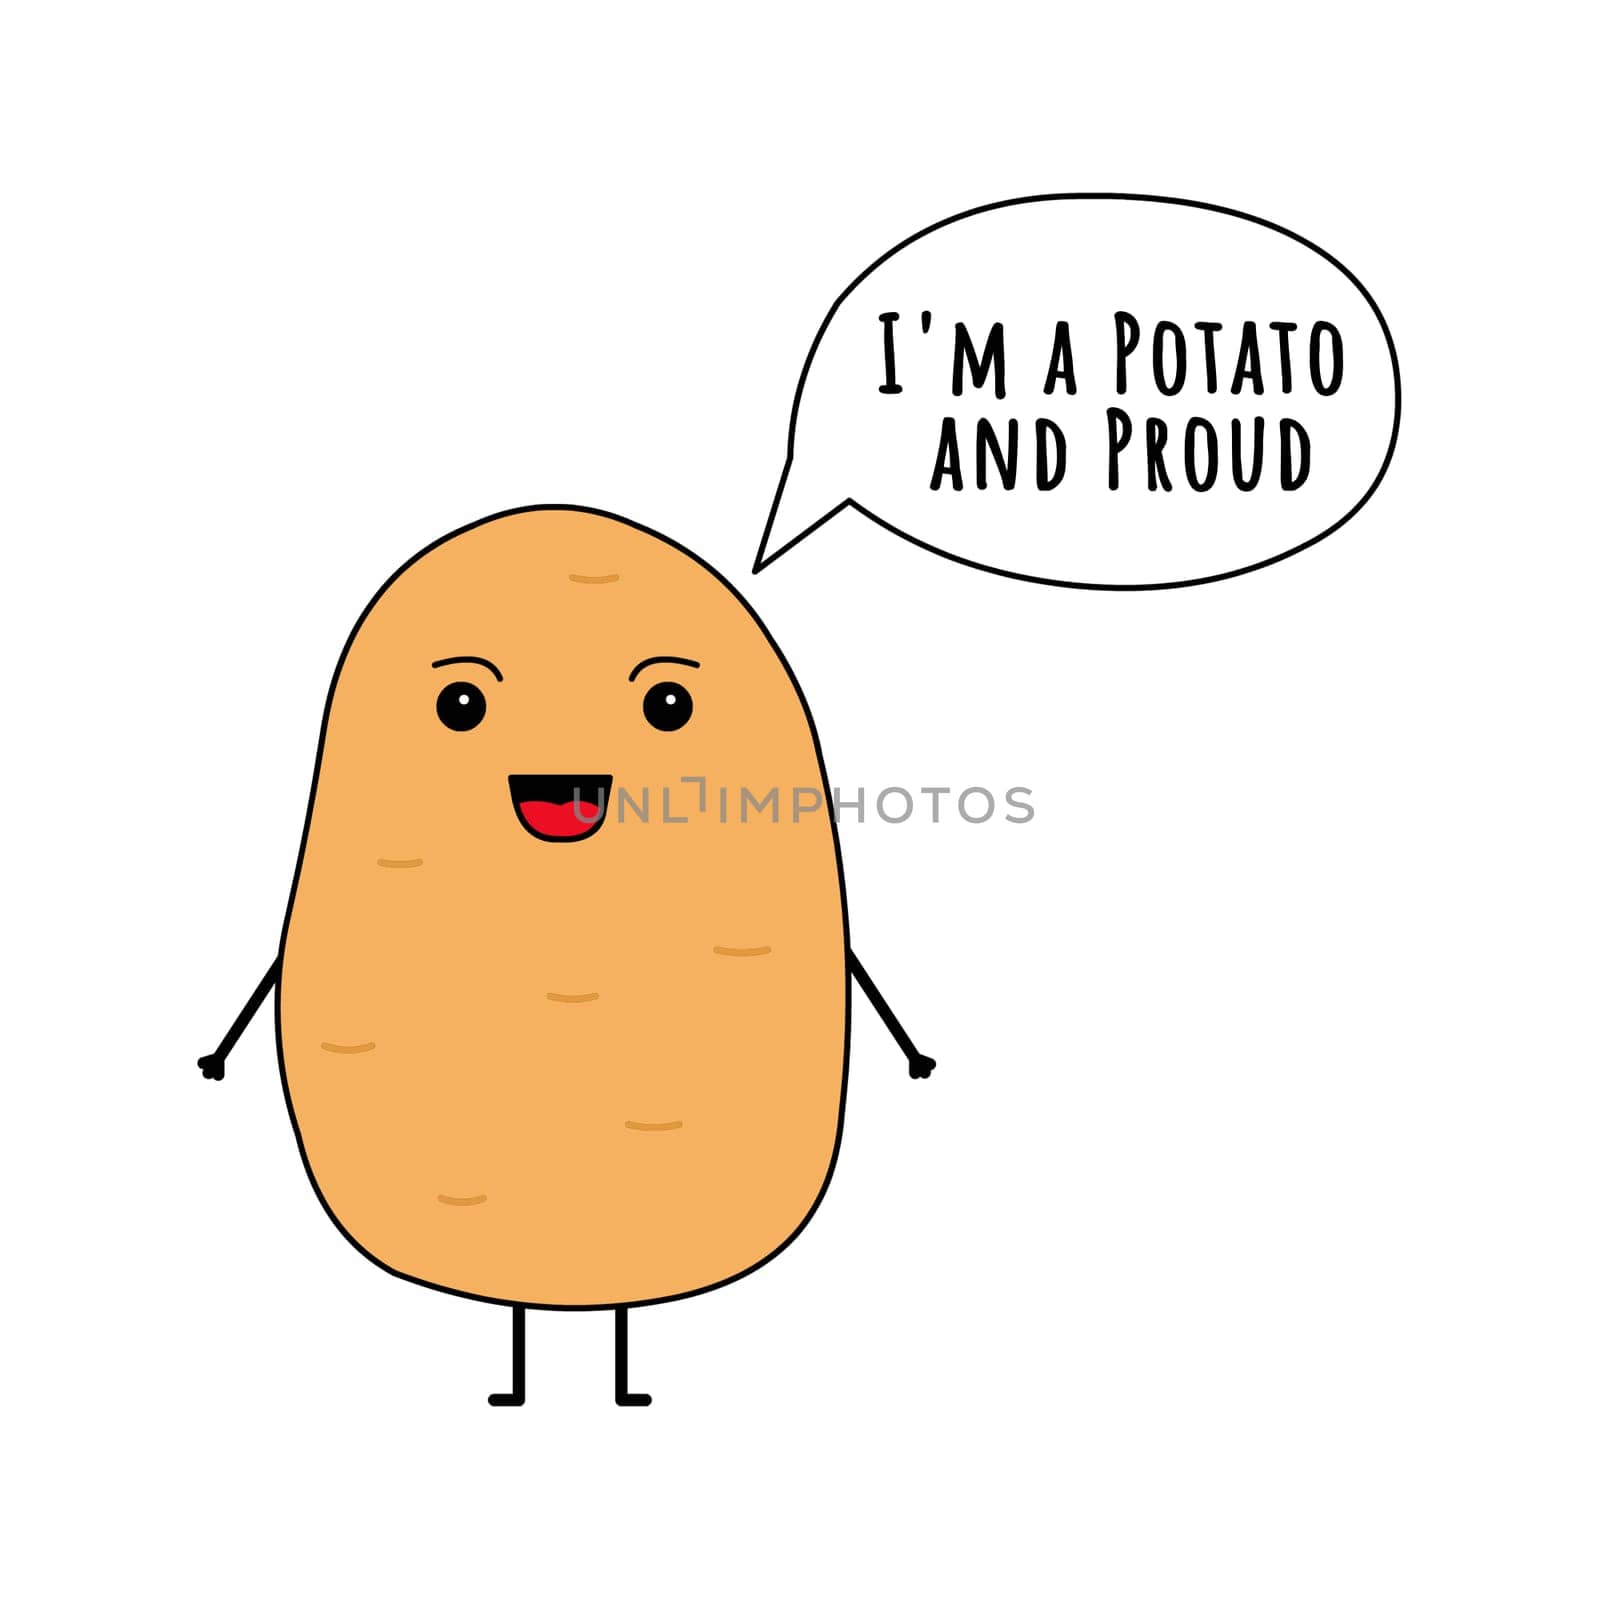 A cute potato with a speech bubble "I'm a potato and proud".